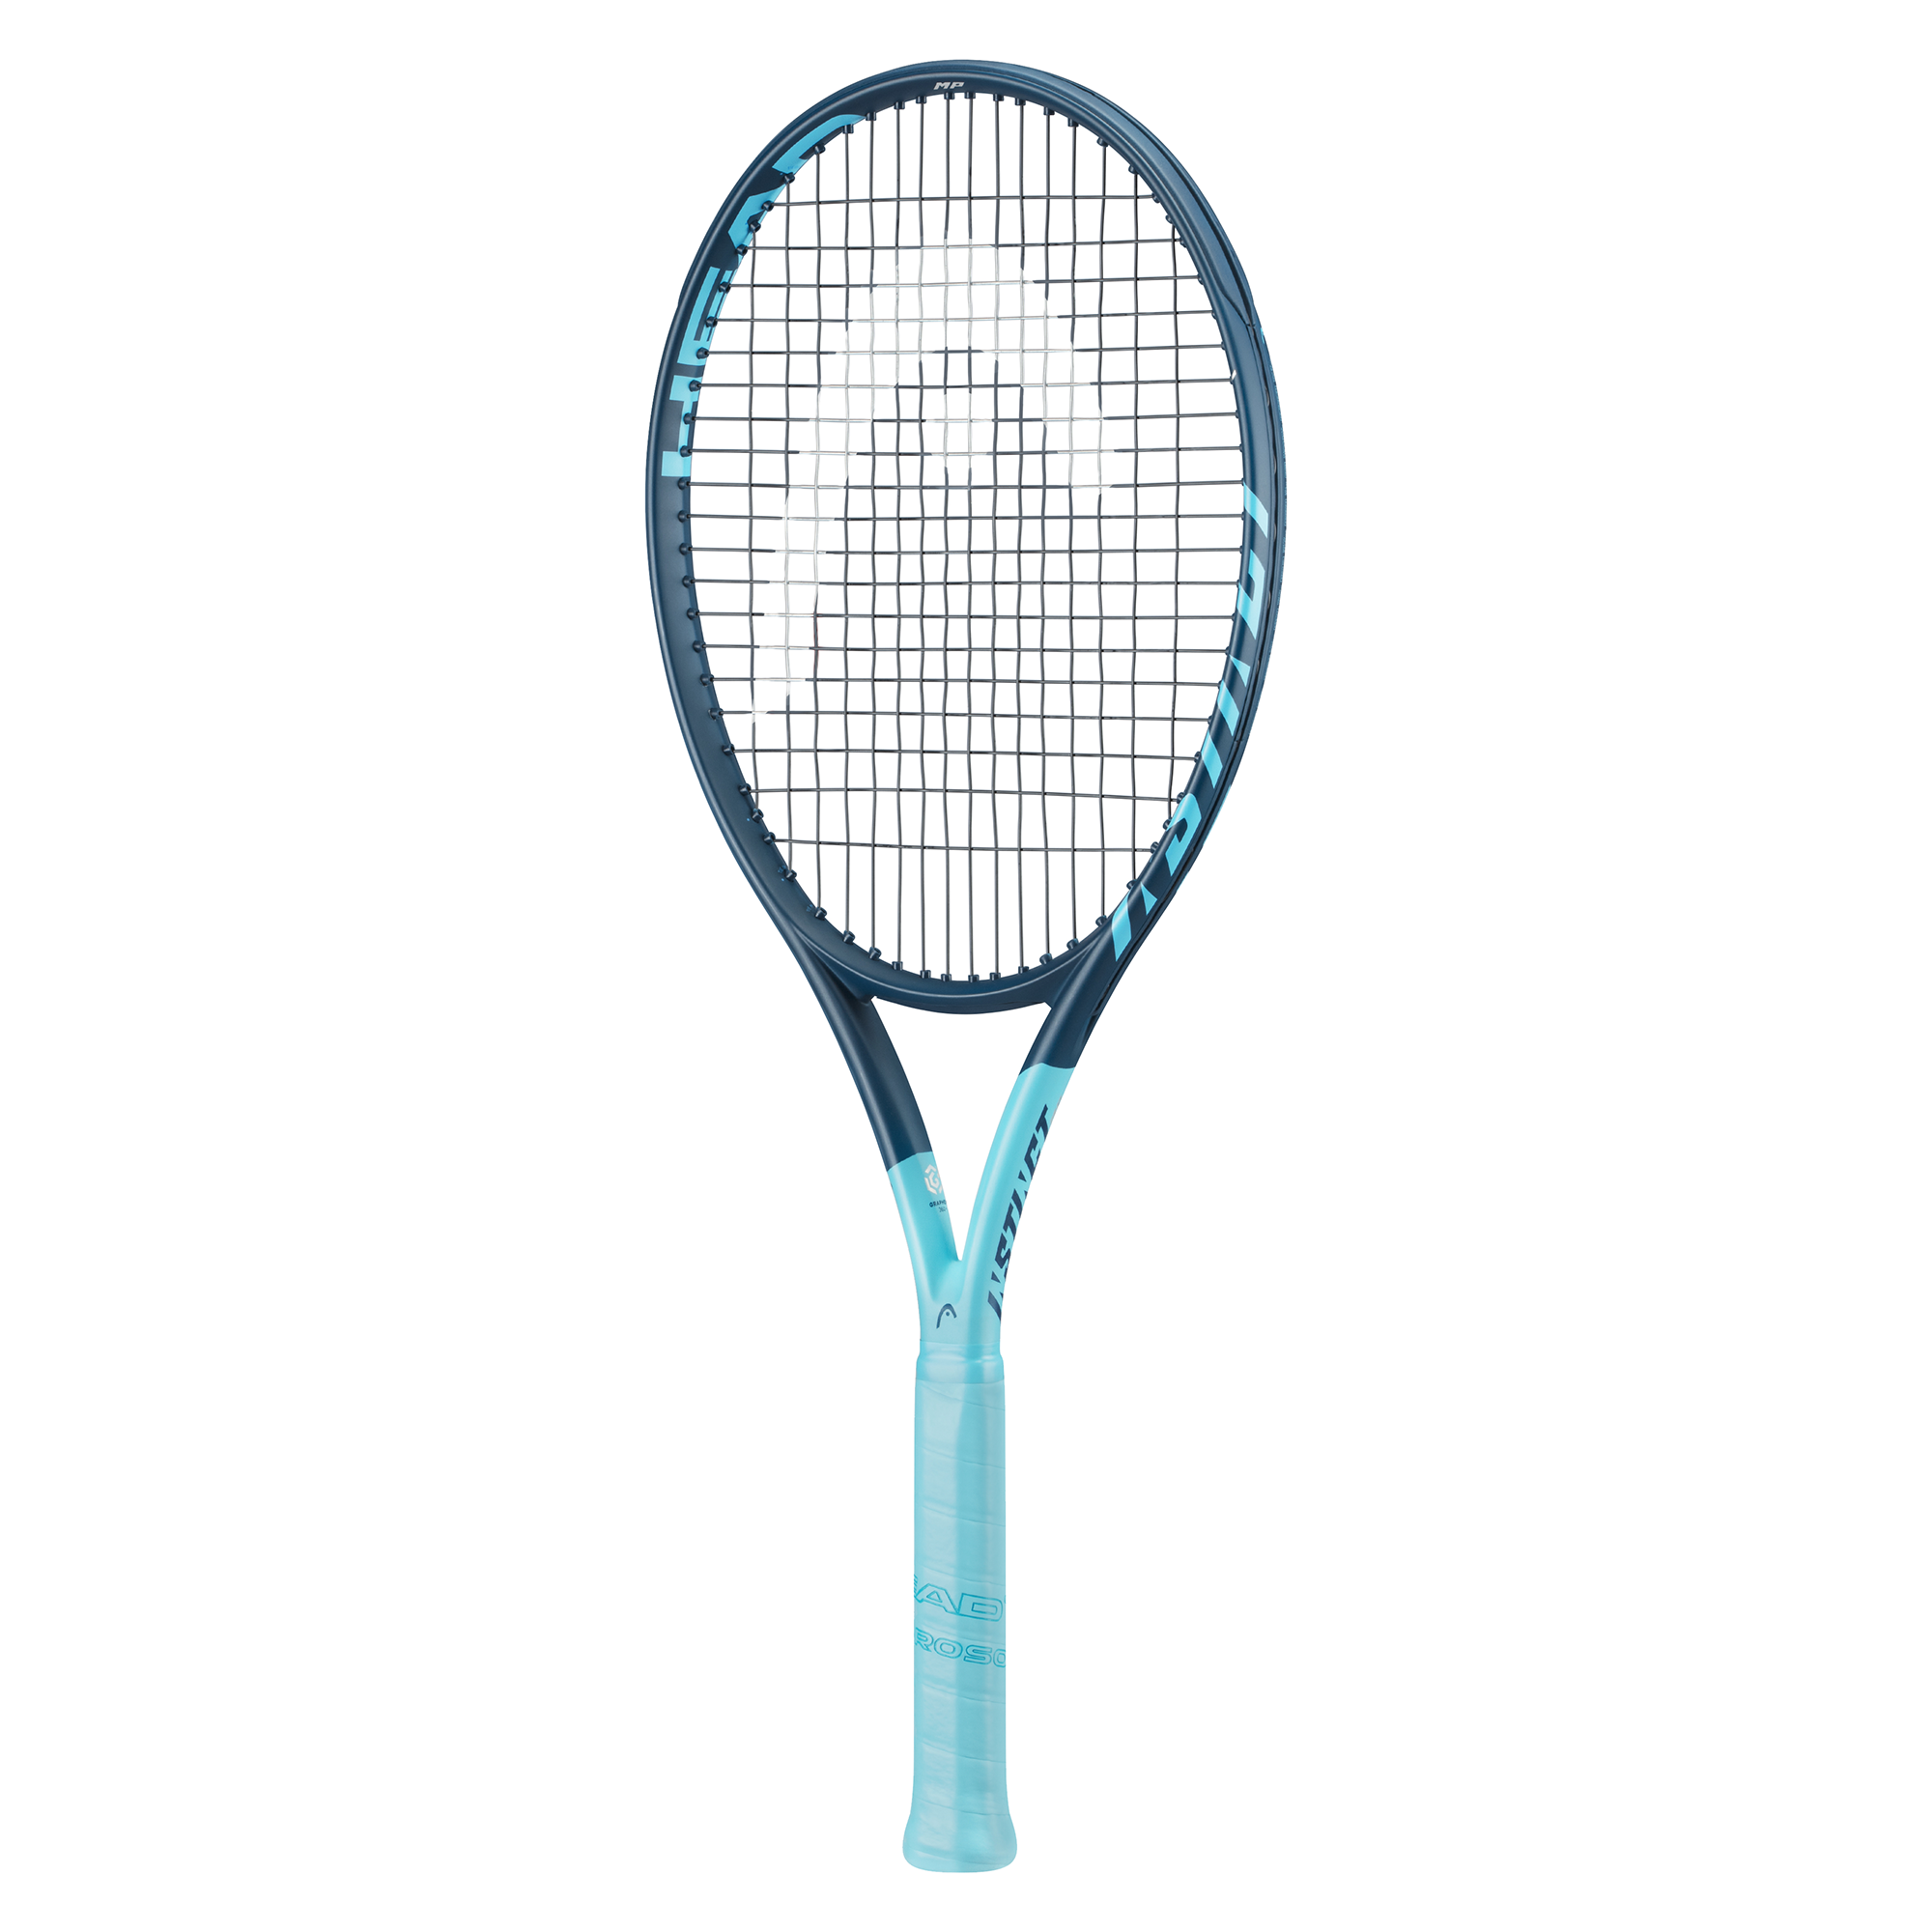 vals Veraangenamen Grijp Head G360+ Instinct MP 2021 Tennis Racquet | PGA TOUR Superstore